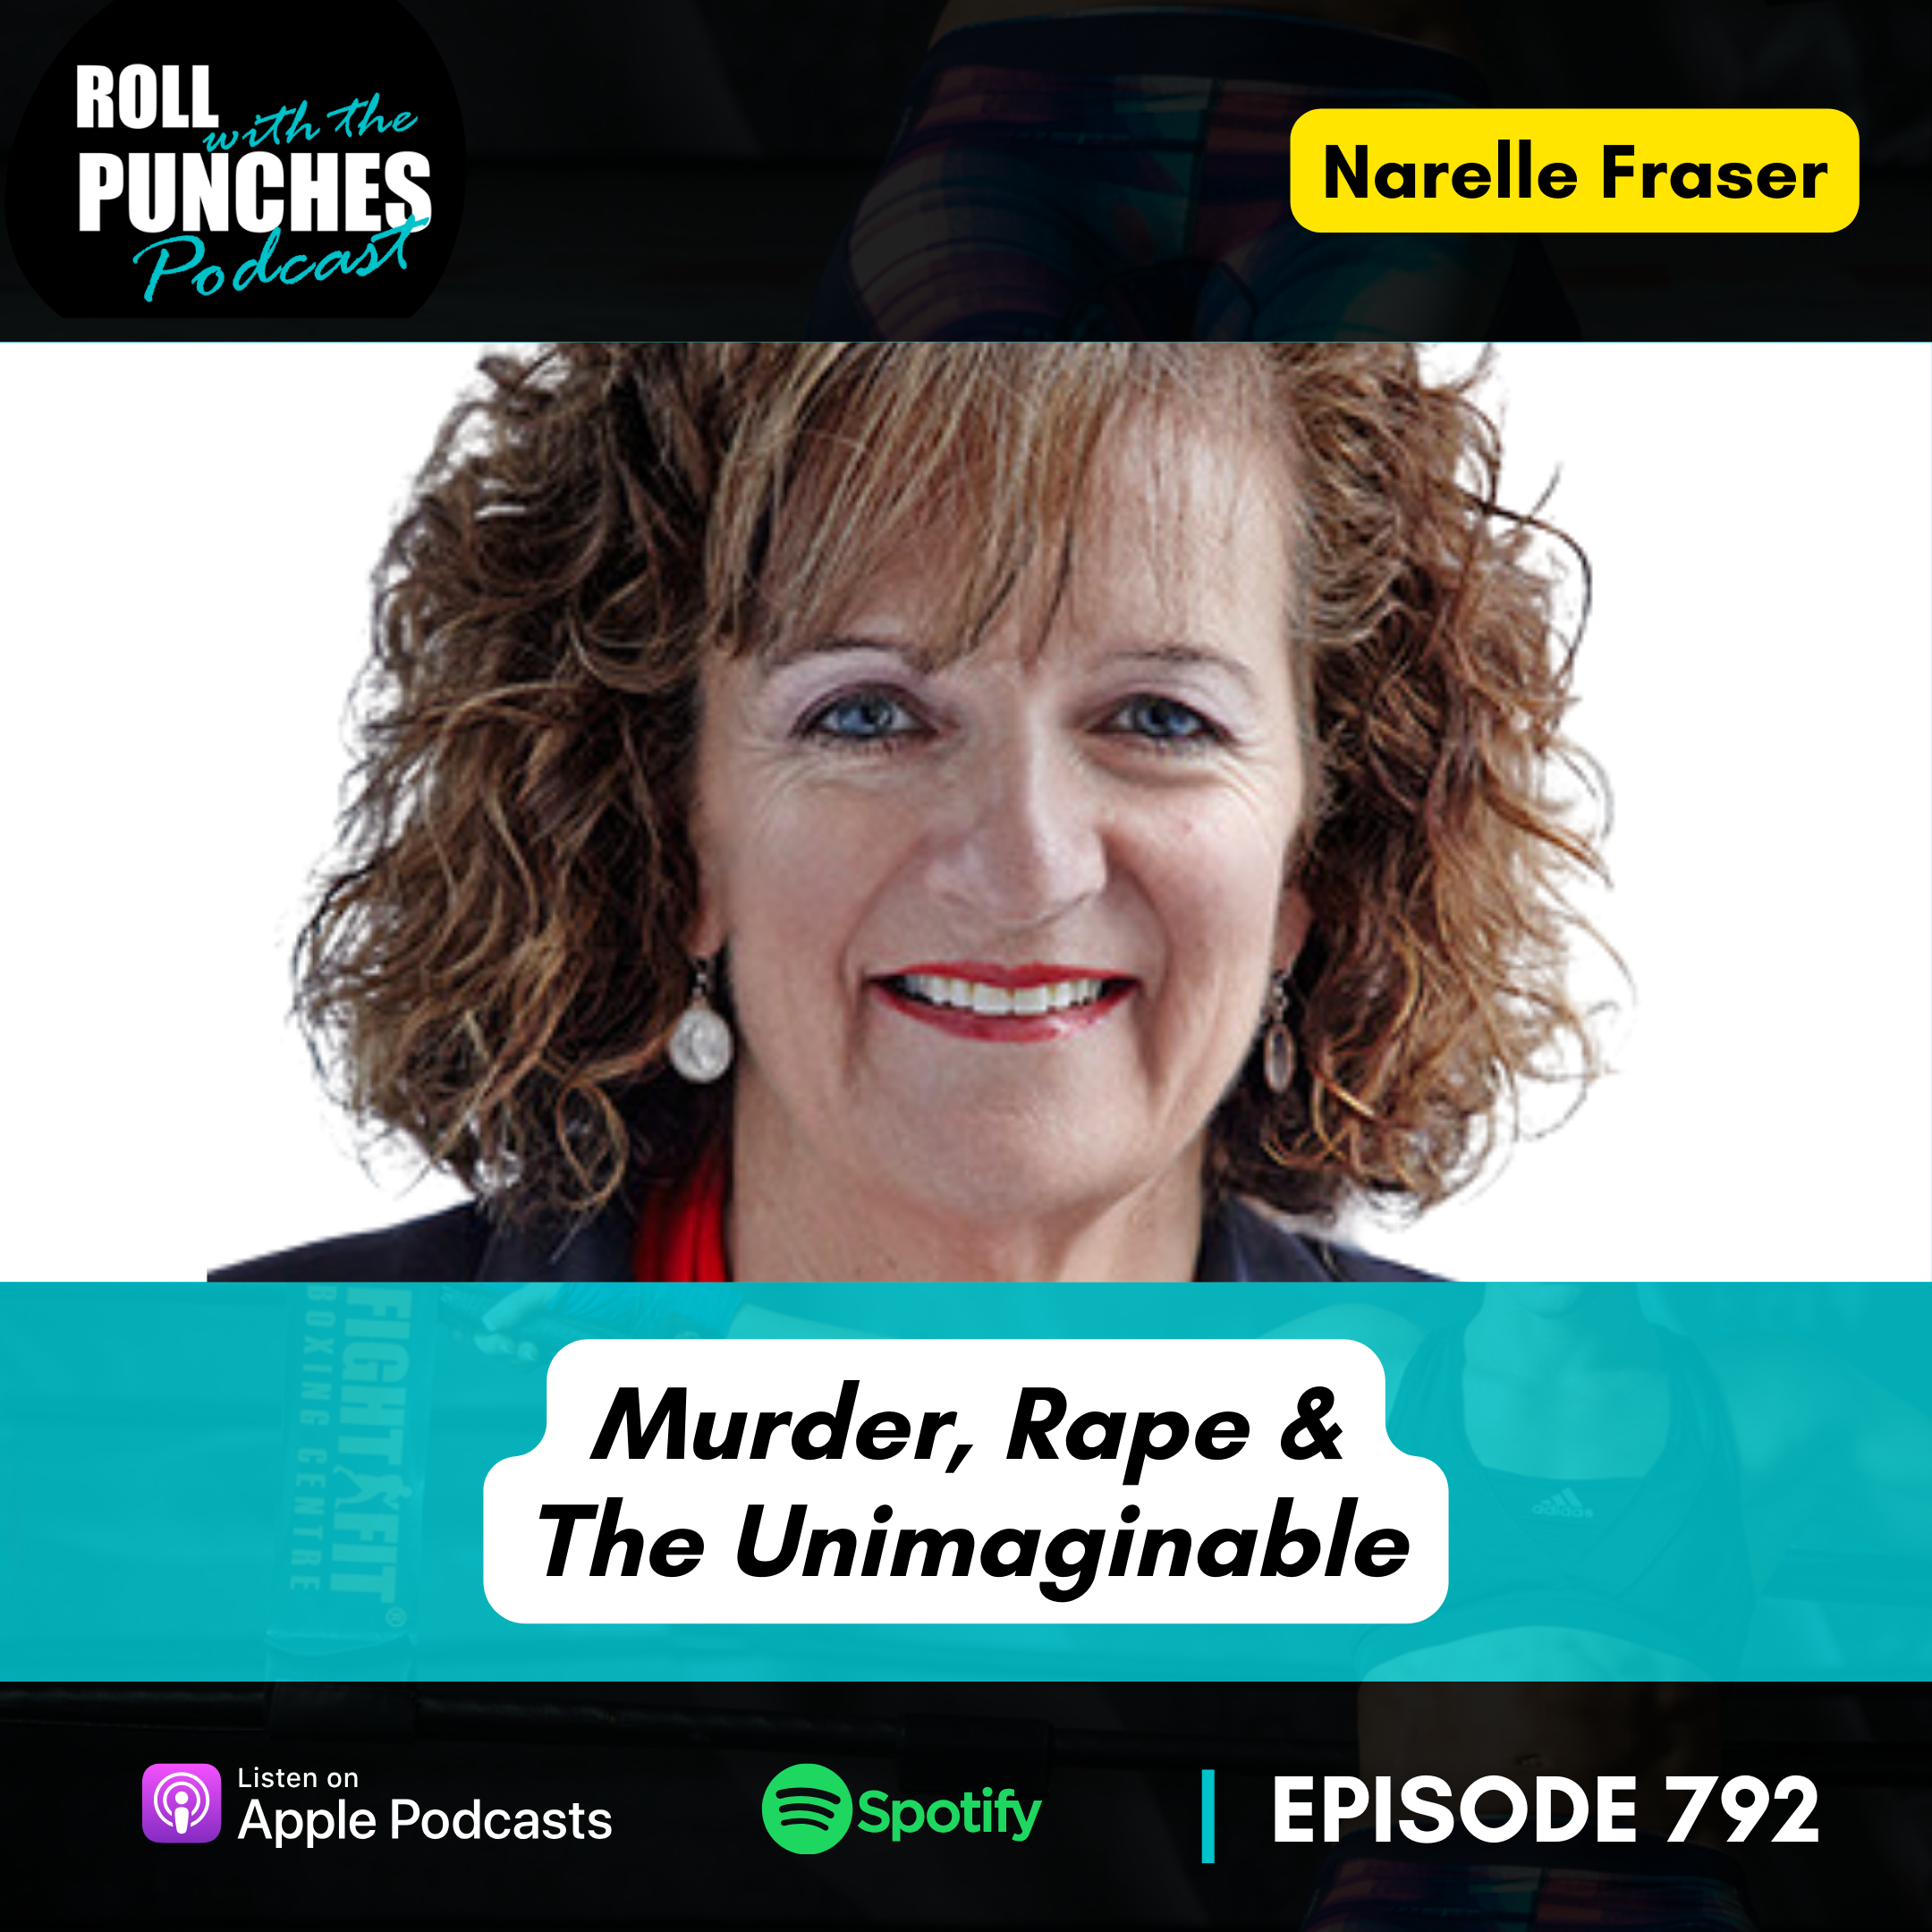 Murder, Rape & The Unimaginable | Narelle Fraser - 792